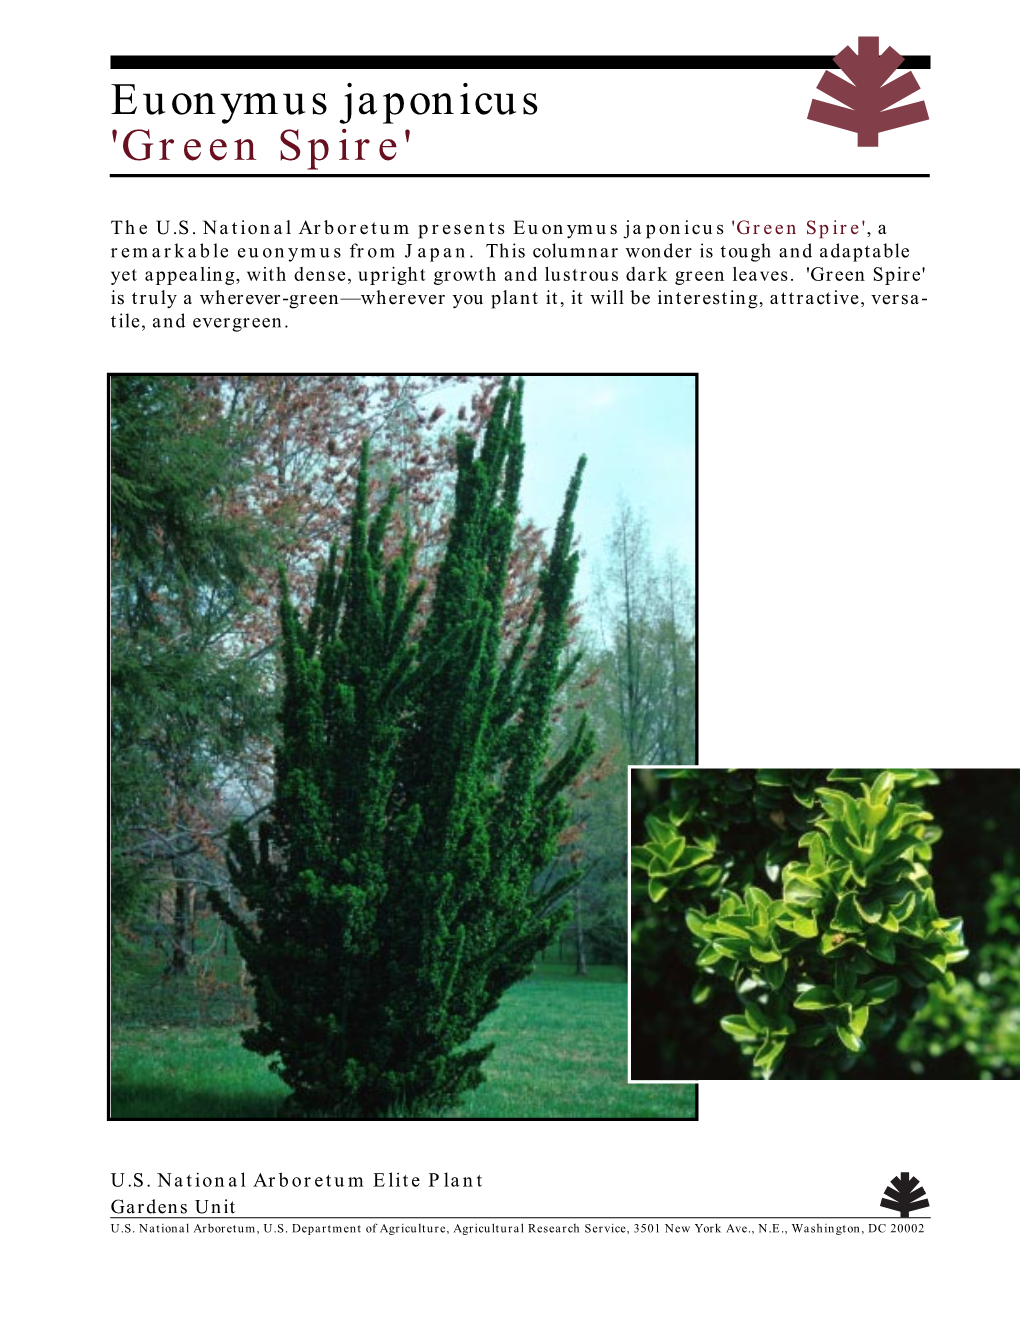 Euonymus Japonicus 'Green Spire'